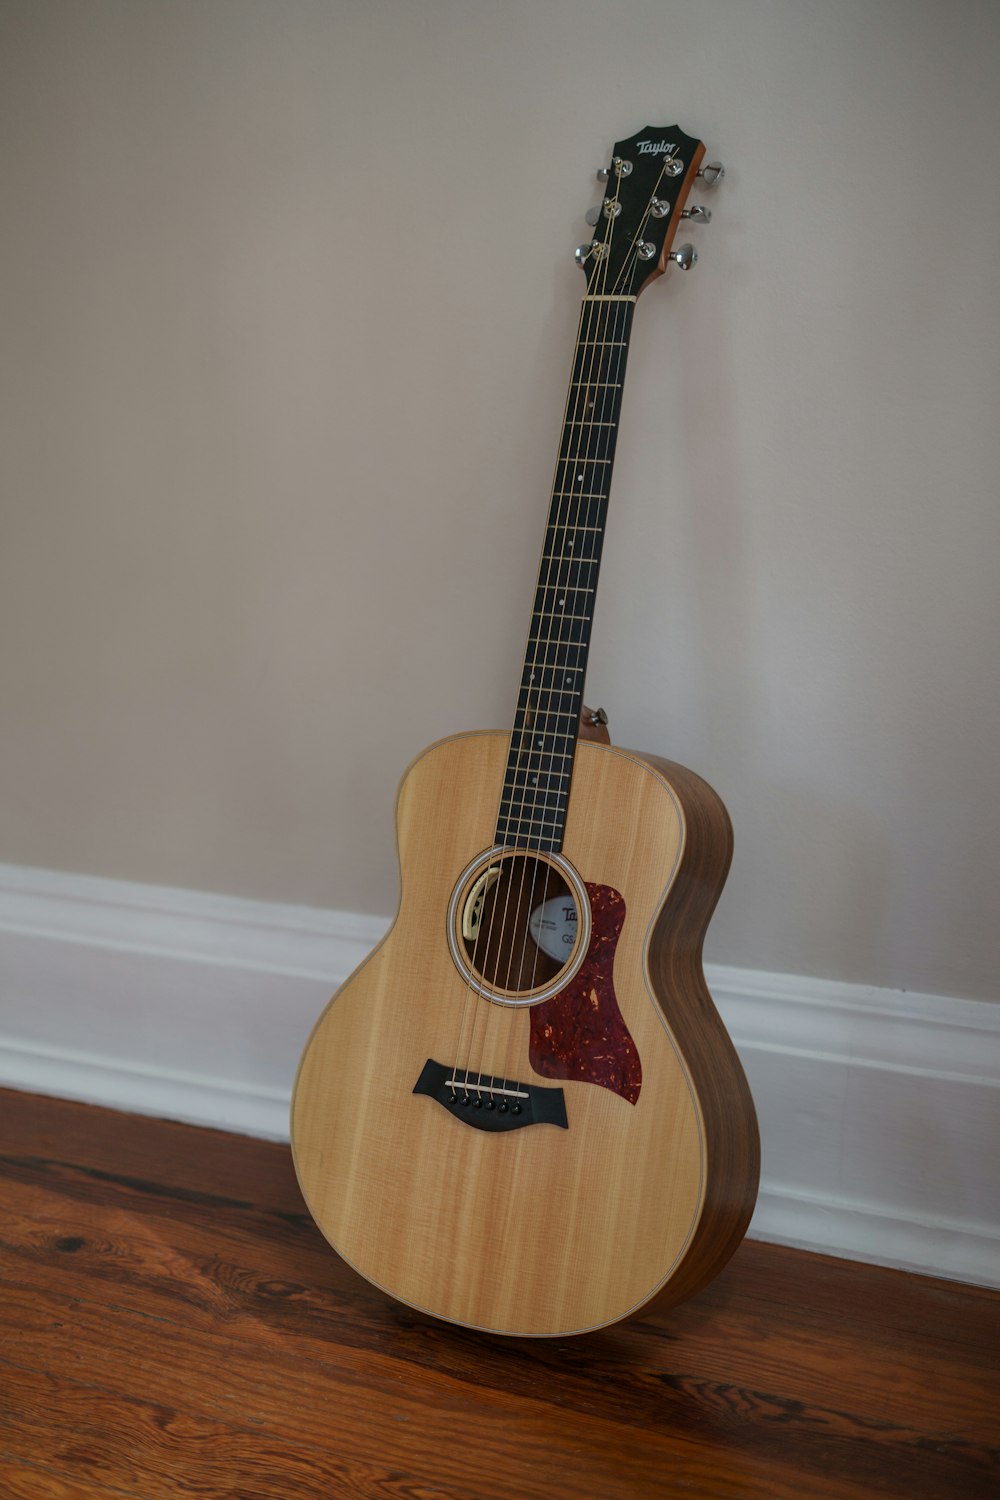 硬い木の床の上に座っている木製のギター